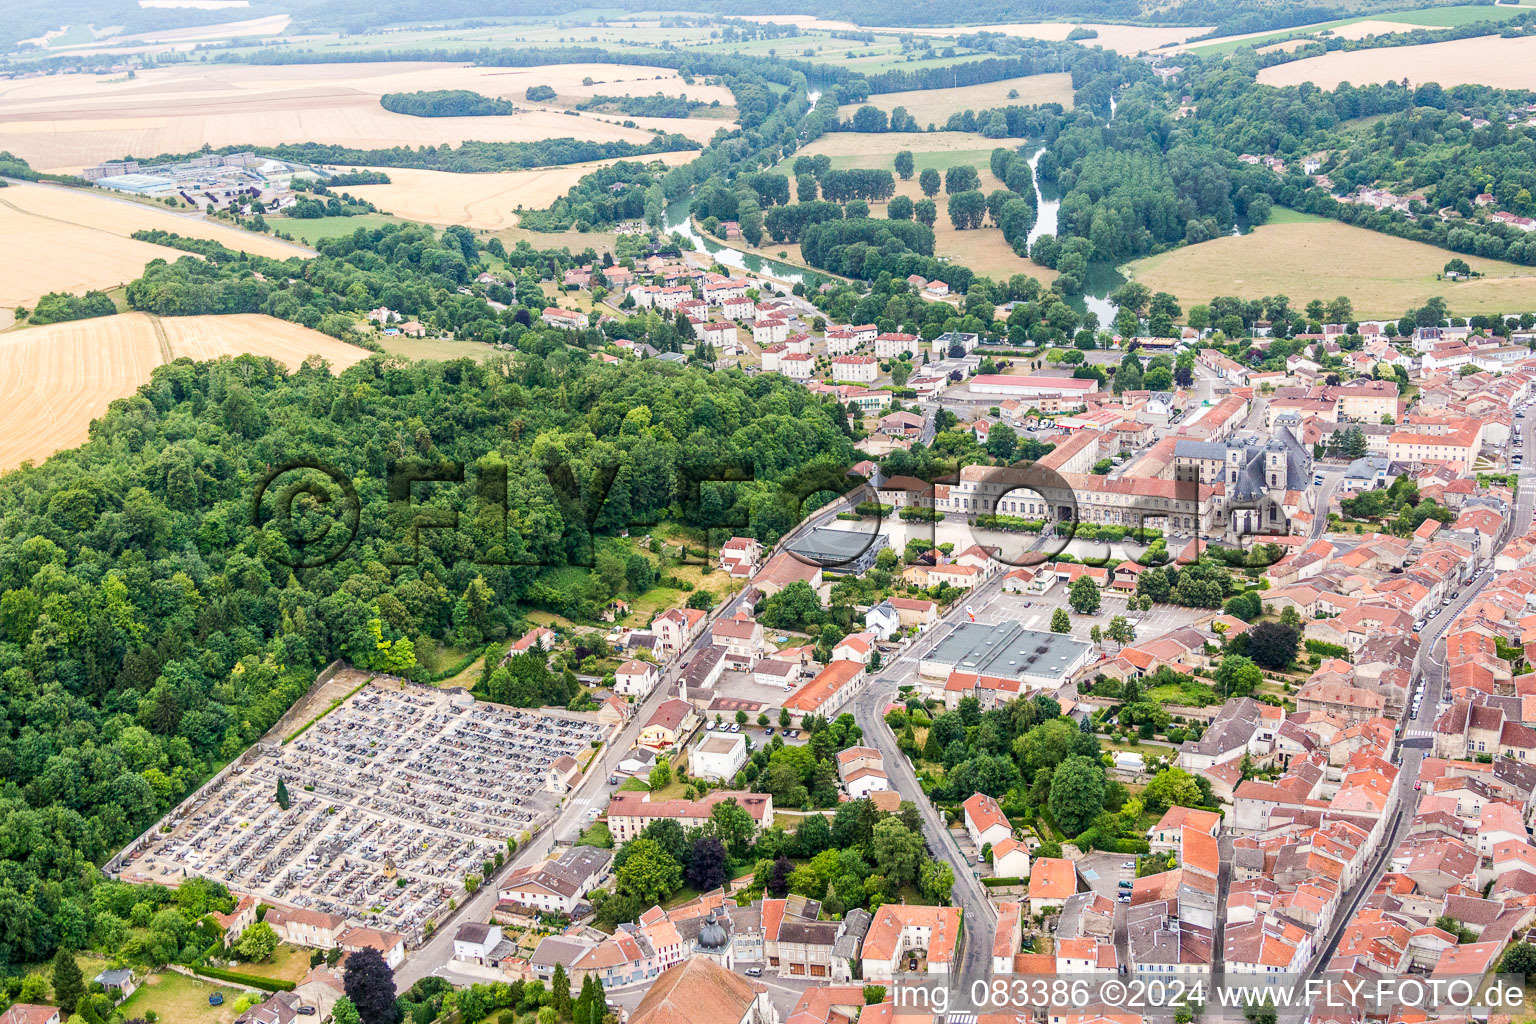 Luftbild von Ortschaft an den Fluss- Uferbereichen der Maas/Meuse in Saint-Mihiel in Grand Est, Frankreich